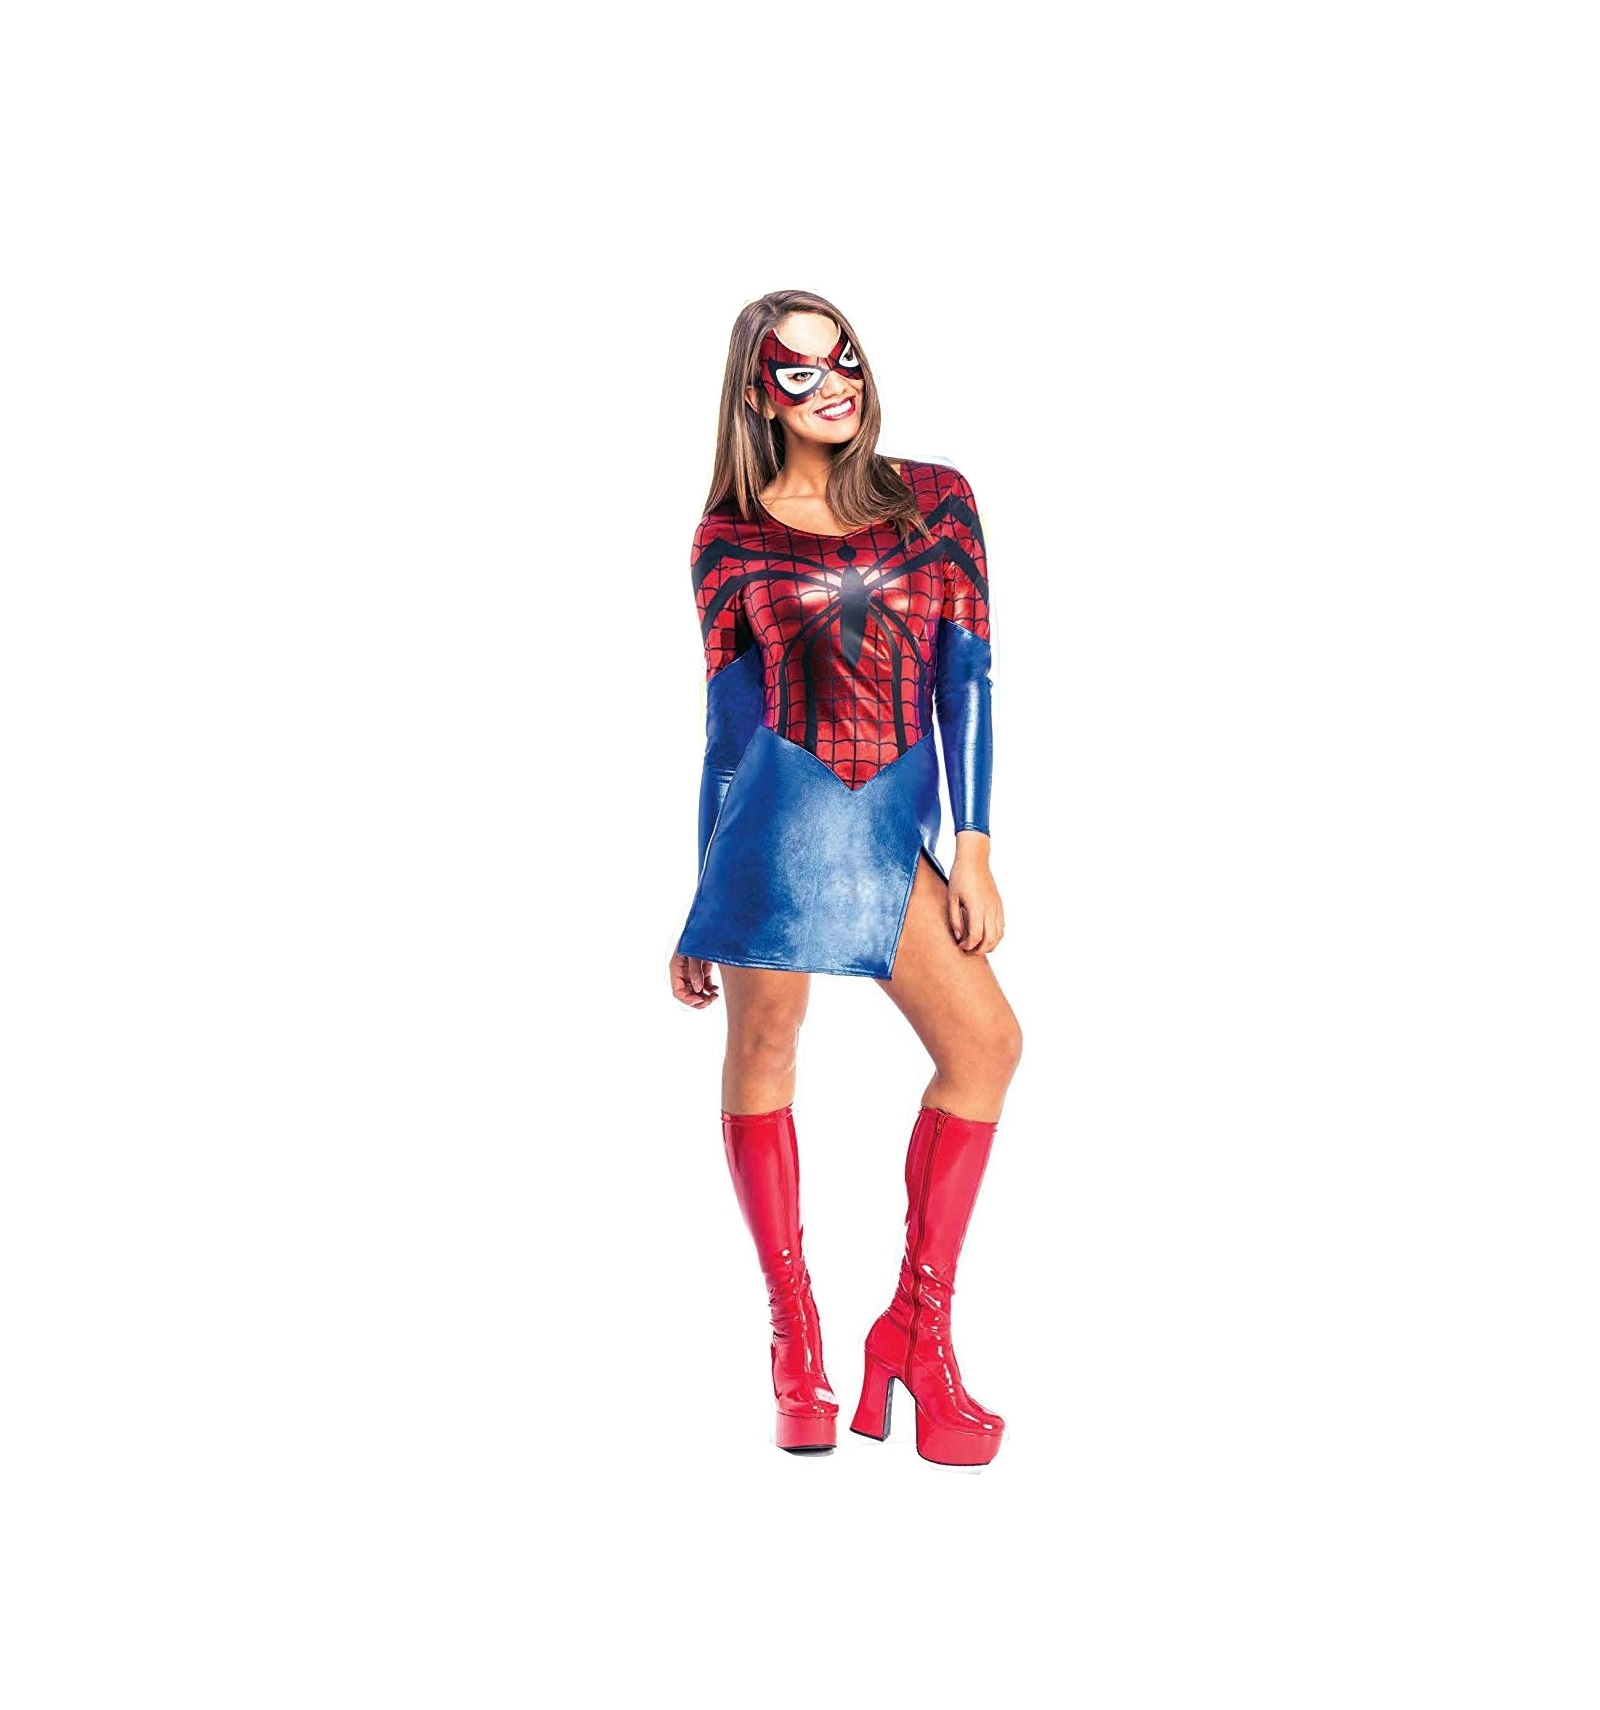 Spidergirl costume, adult.